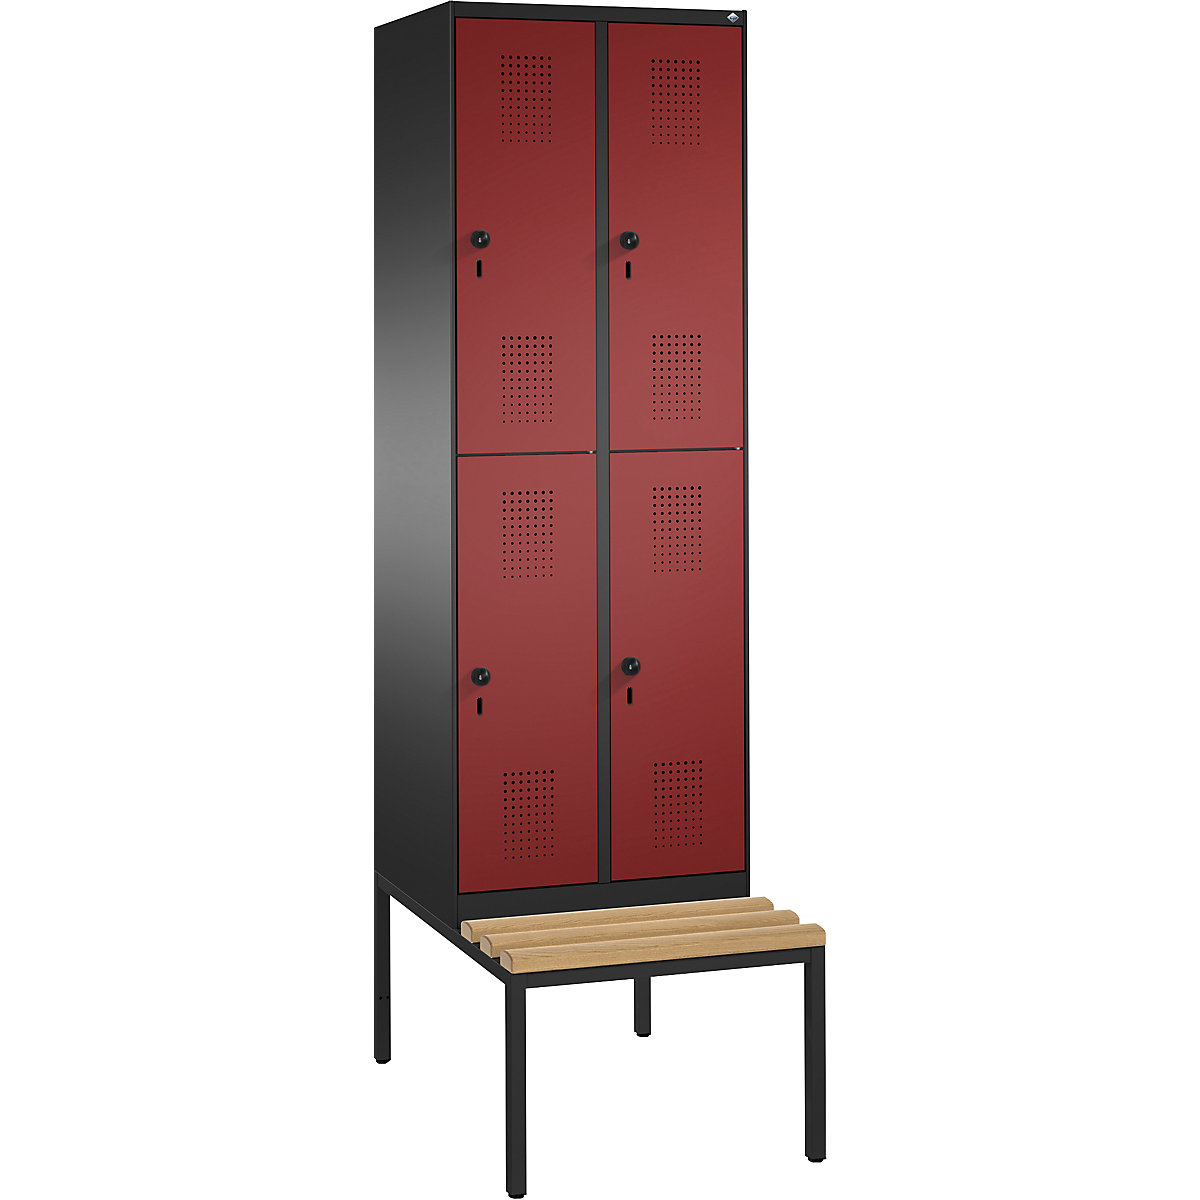 Penderie EVOLO à deux étages, avec banc – C+P, 2 compartiments, 2 casiers chacun, largeur compartiments 300 mm, gris noir / rouge rubis-9